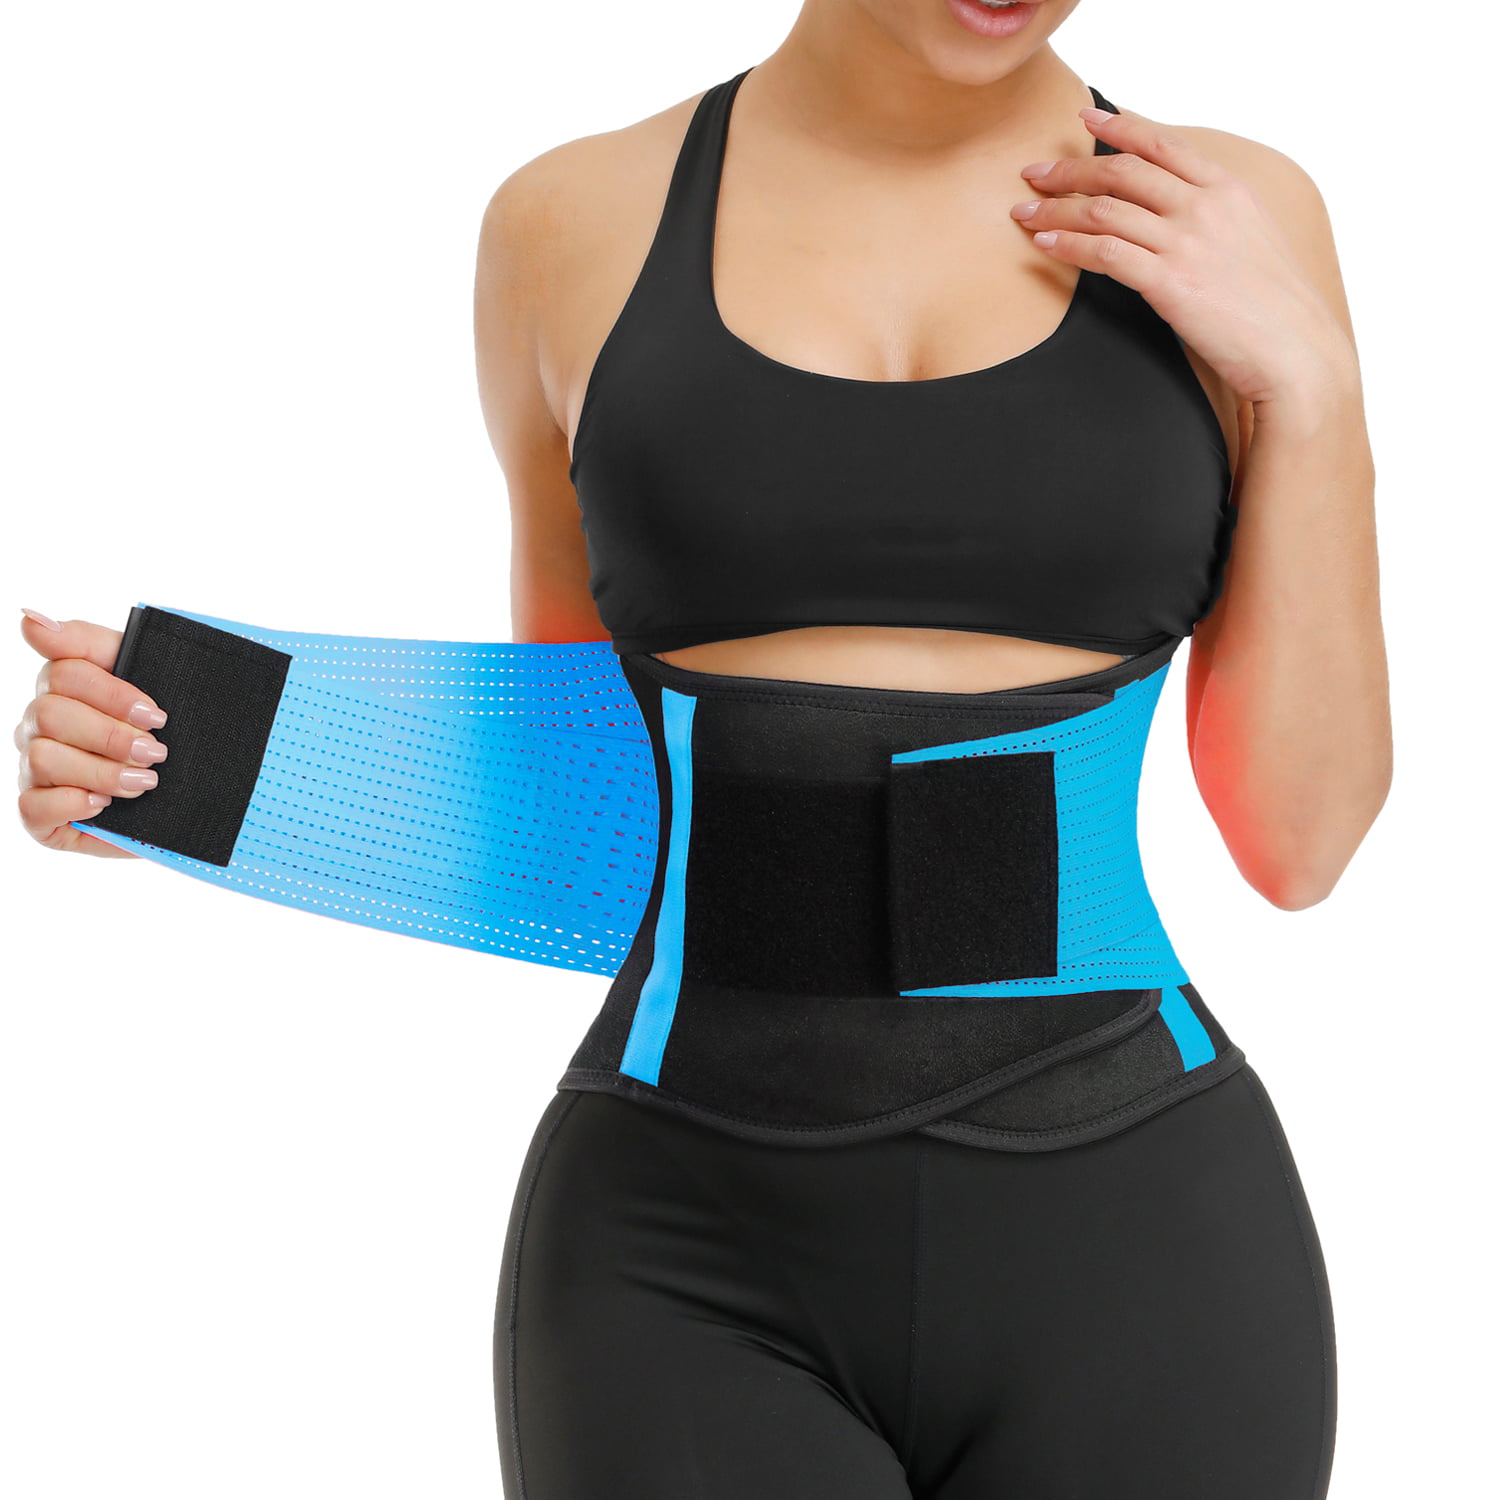 Slimming Body Shaper Belt Sport Workout Back Support Girdle Belt VENUZOR Waist Trainer Belt for Women Waist Cincher Trimmer Weight Loss Ab Belt